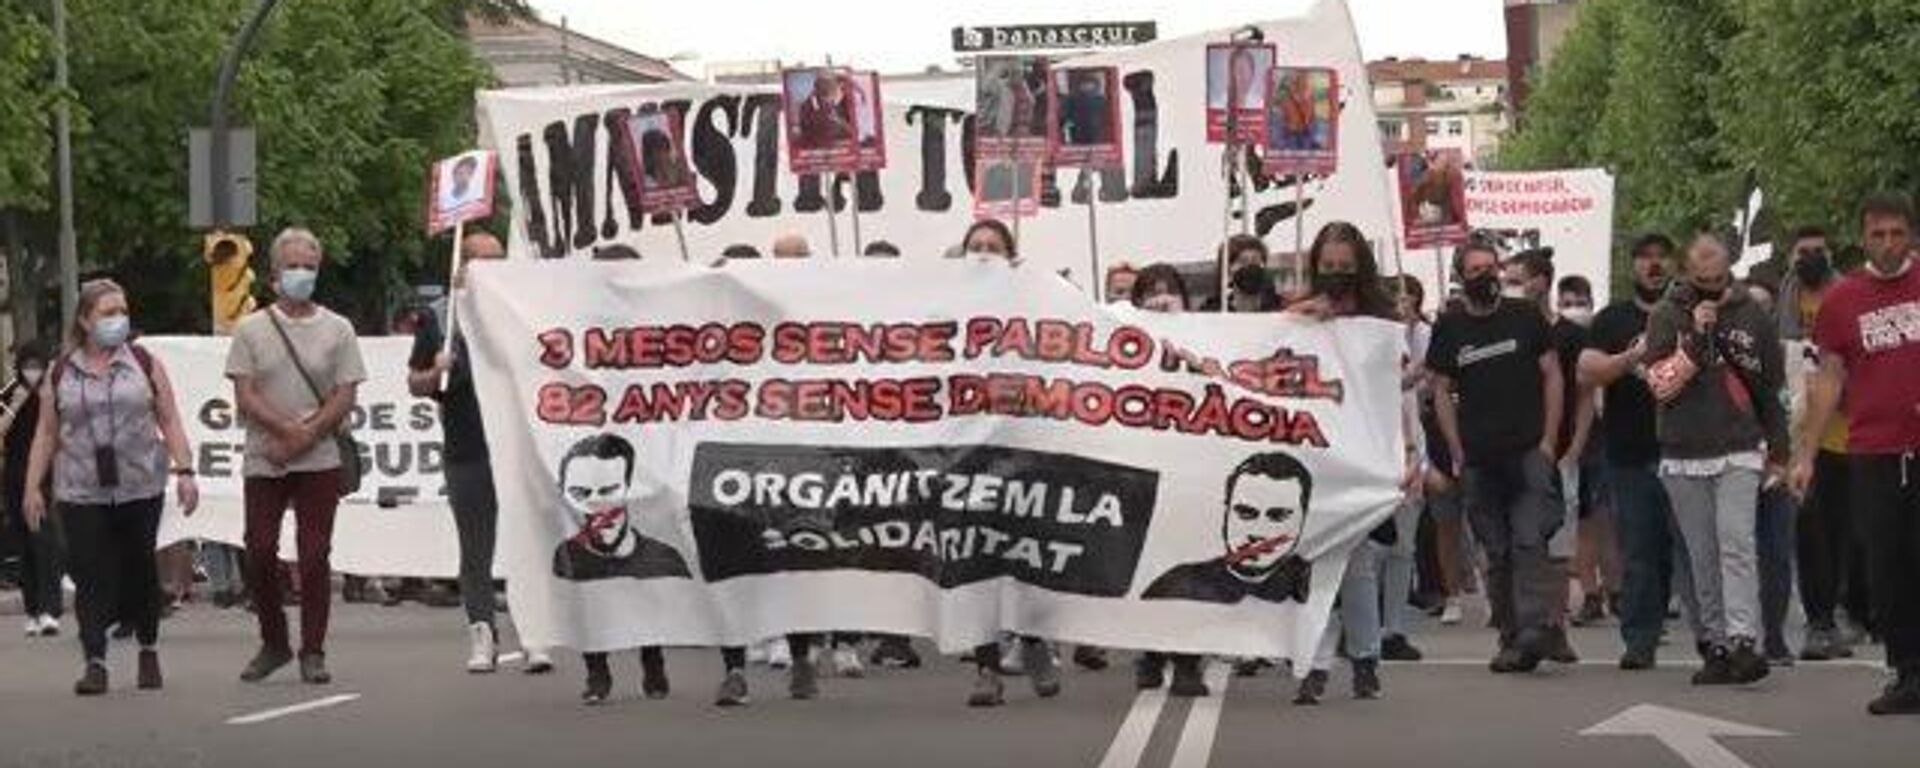 Manifestantes marchan hasta la cárcel de Lleida exigiendo la liberación del rapero Pablo Hasél - Sputnik Mundo, 1920, 16.05.2021